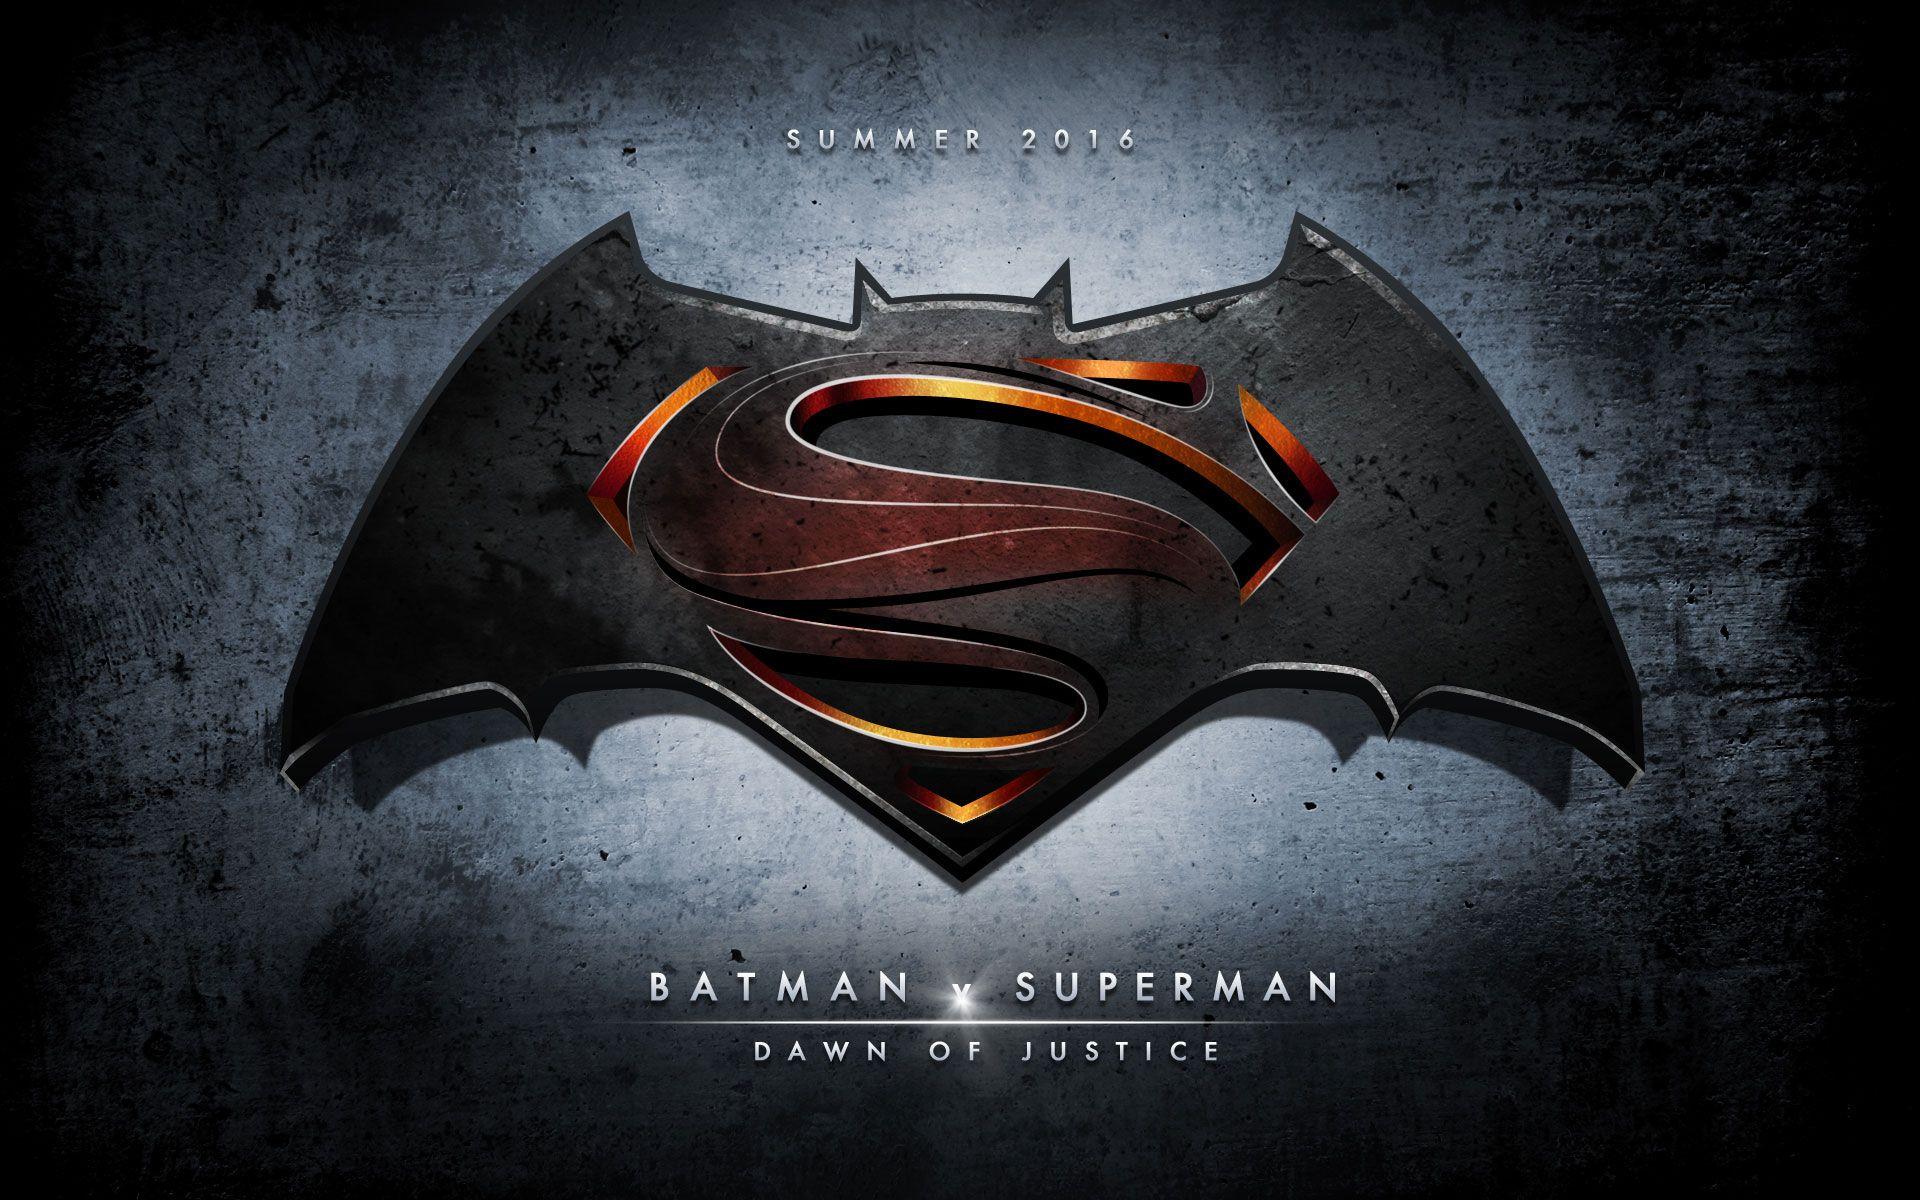 Batman Vs Superman Wallpaper Batman Vs Superman Dawn Of Justice 2016